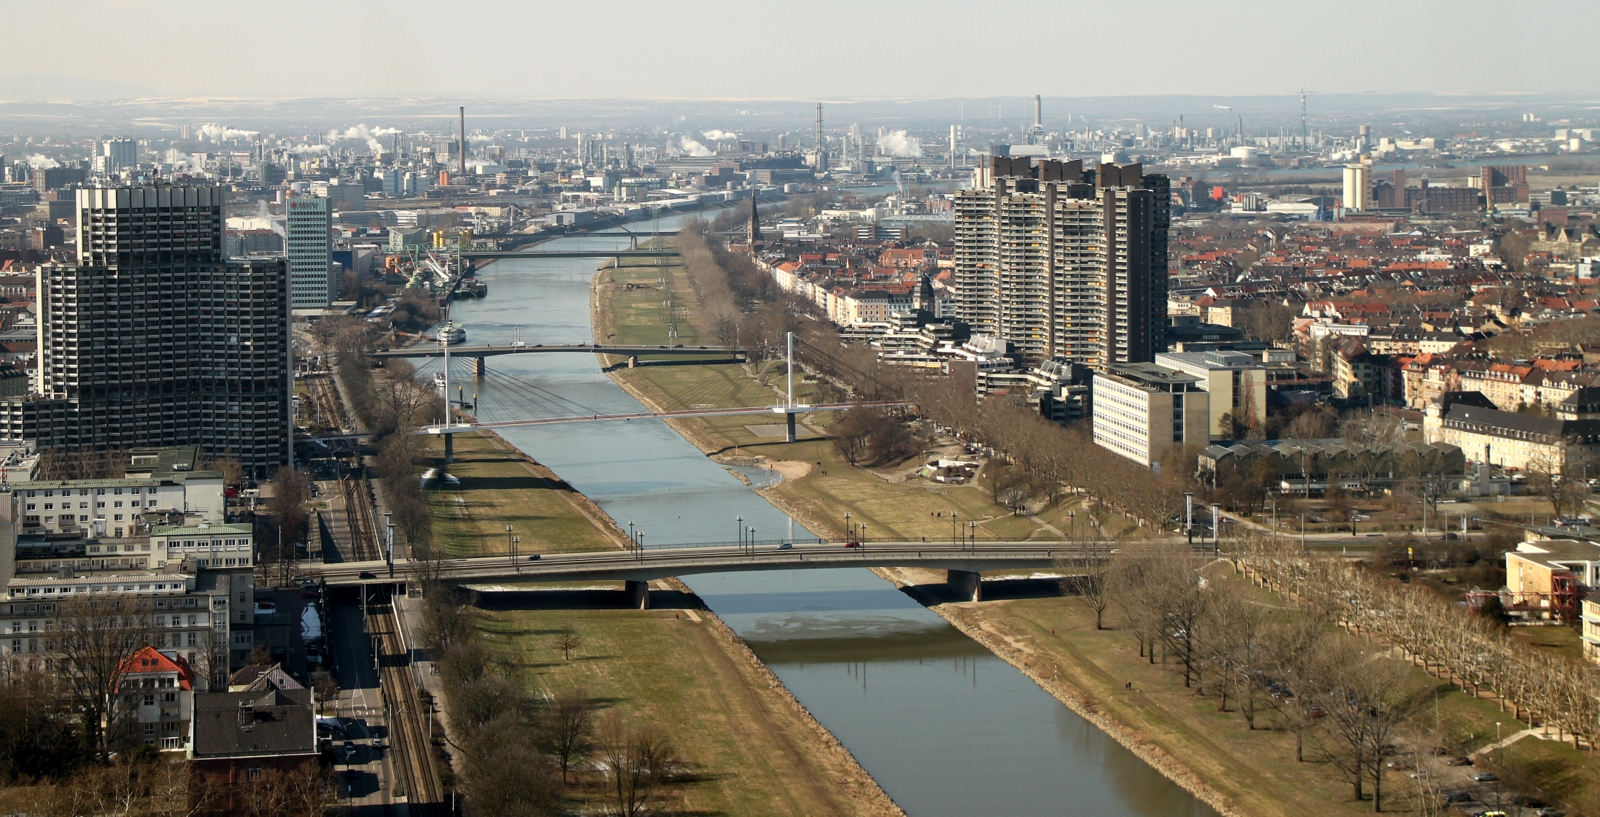 Neckarbrücken in Mannheim vom Fernmeldeturm aus gesehen